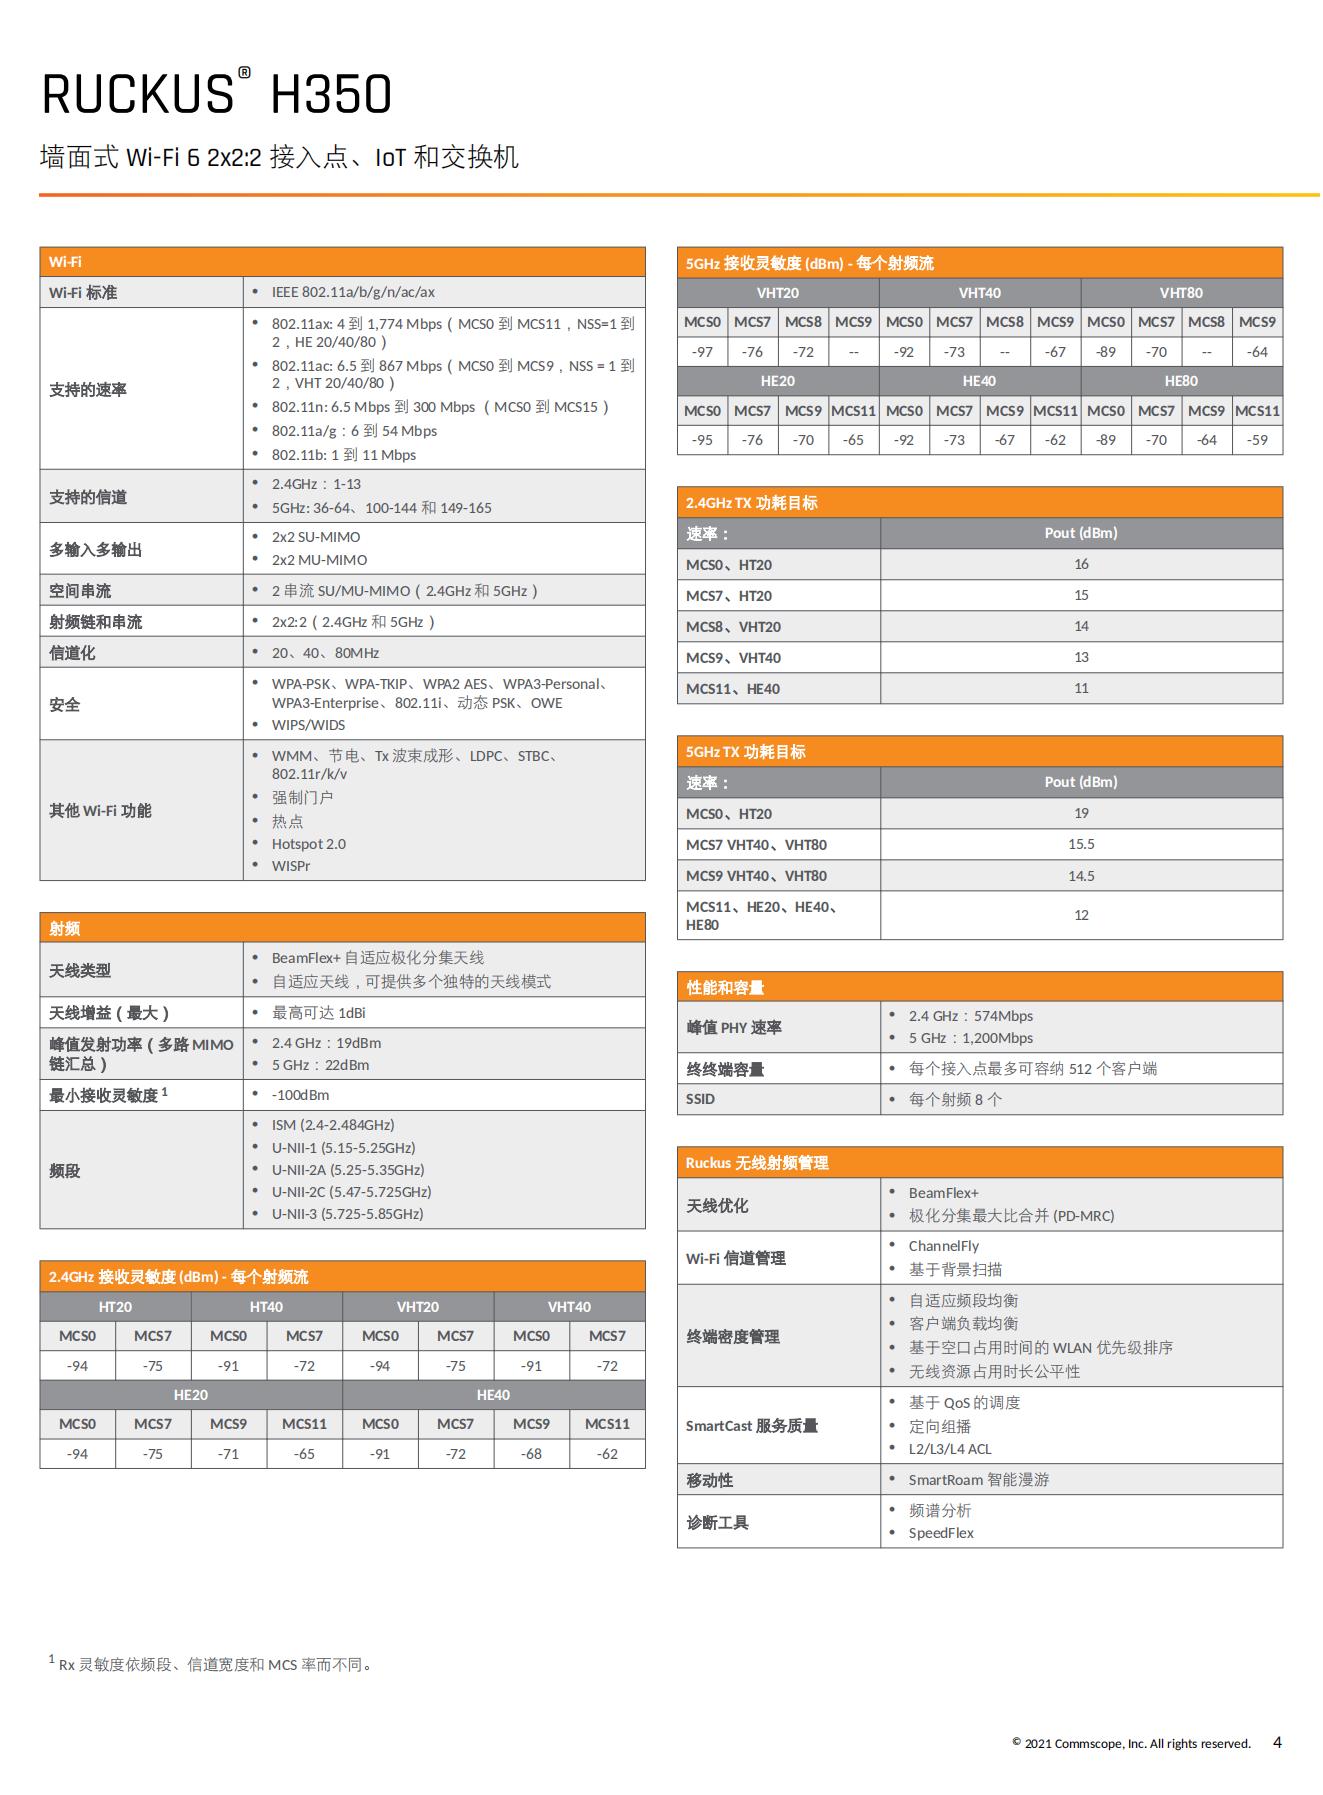 RUCKUS H350 Data Sheet - Chinese Simplified_03.jpg